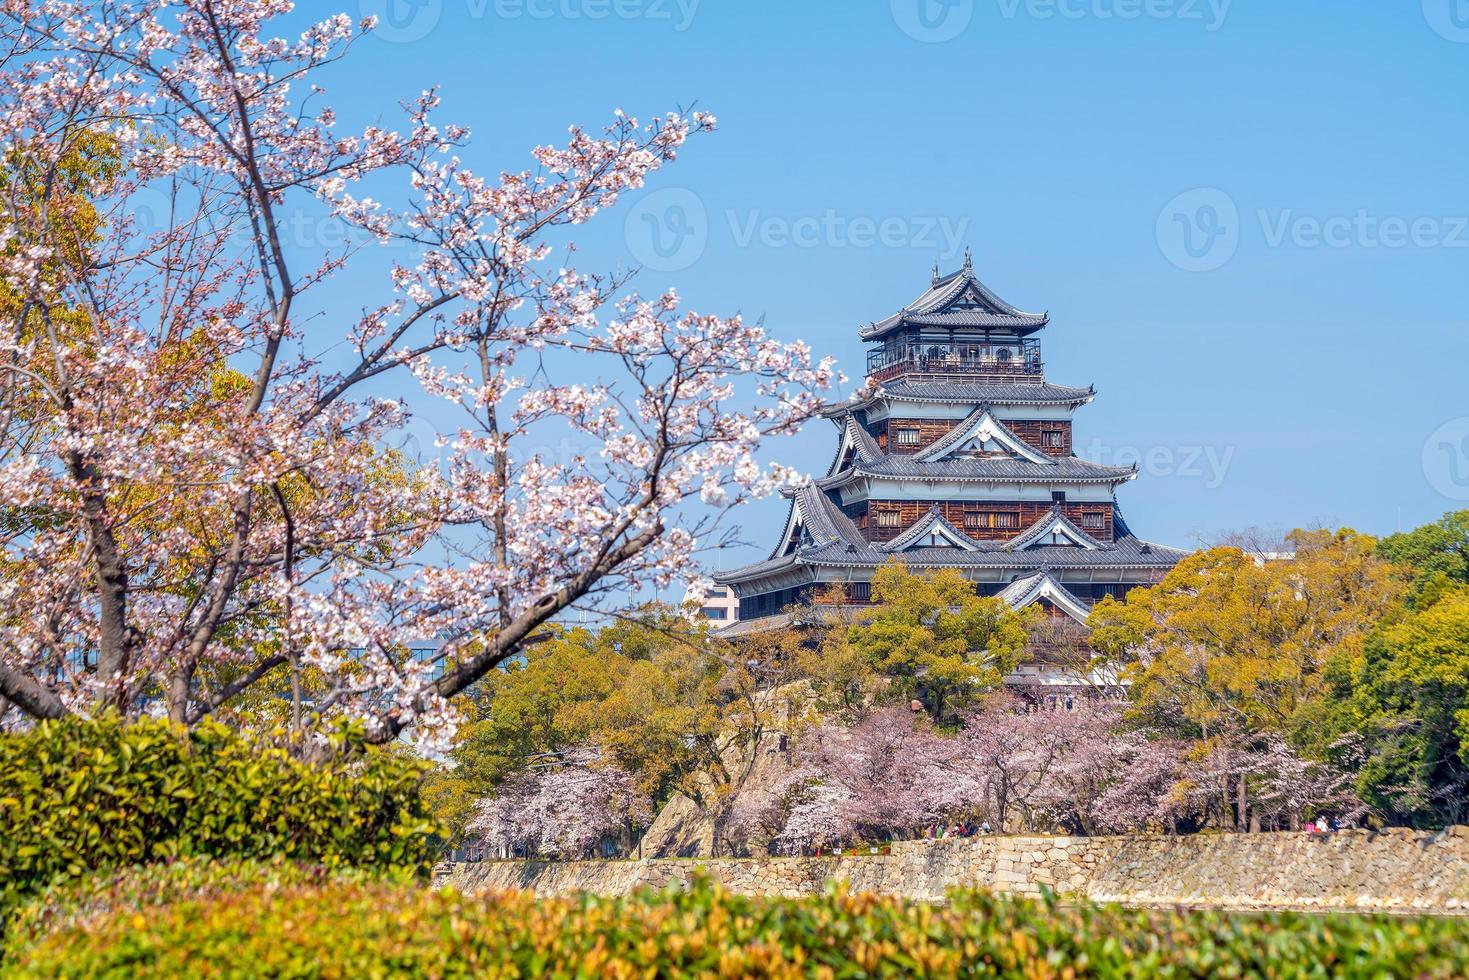 Hiroshima kasteel gedurende kers bloesem seizoen in Japan dag tijd foto